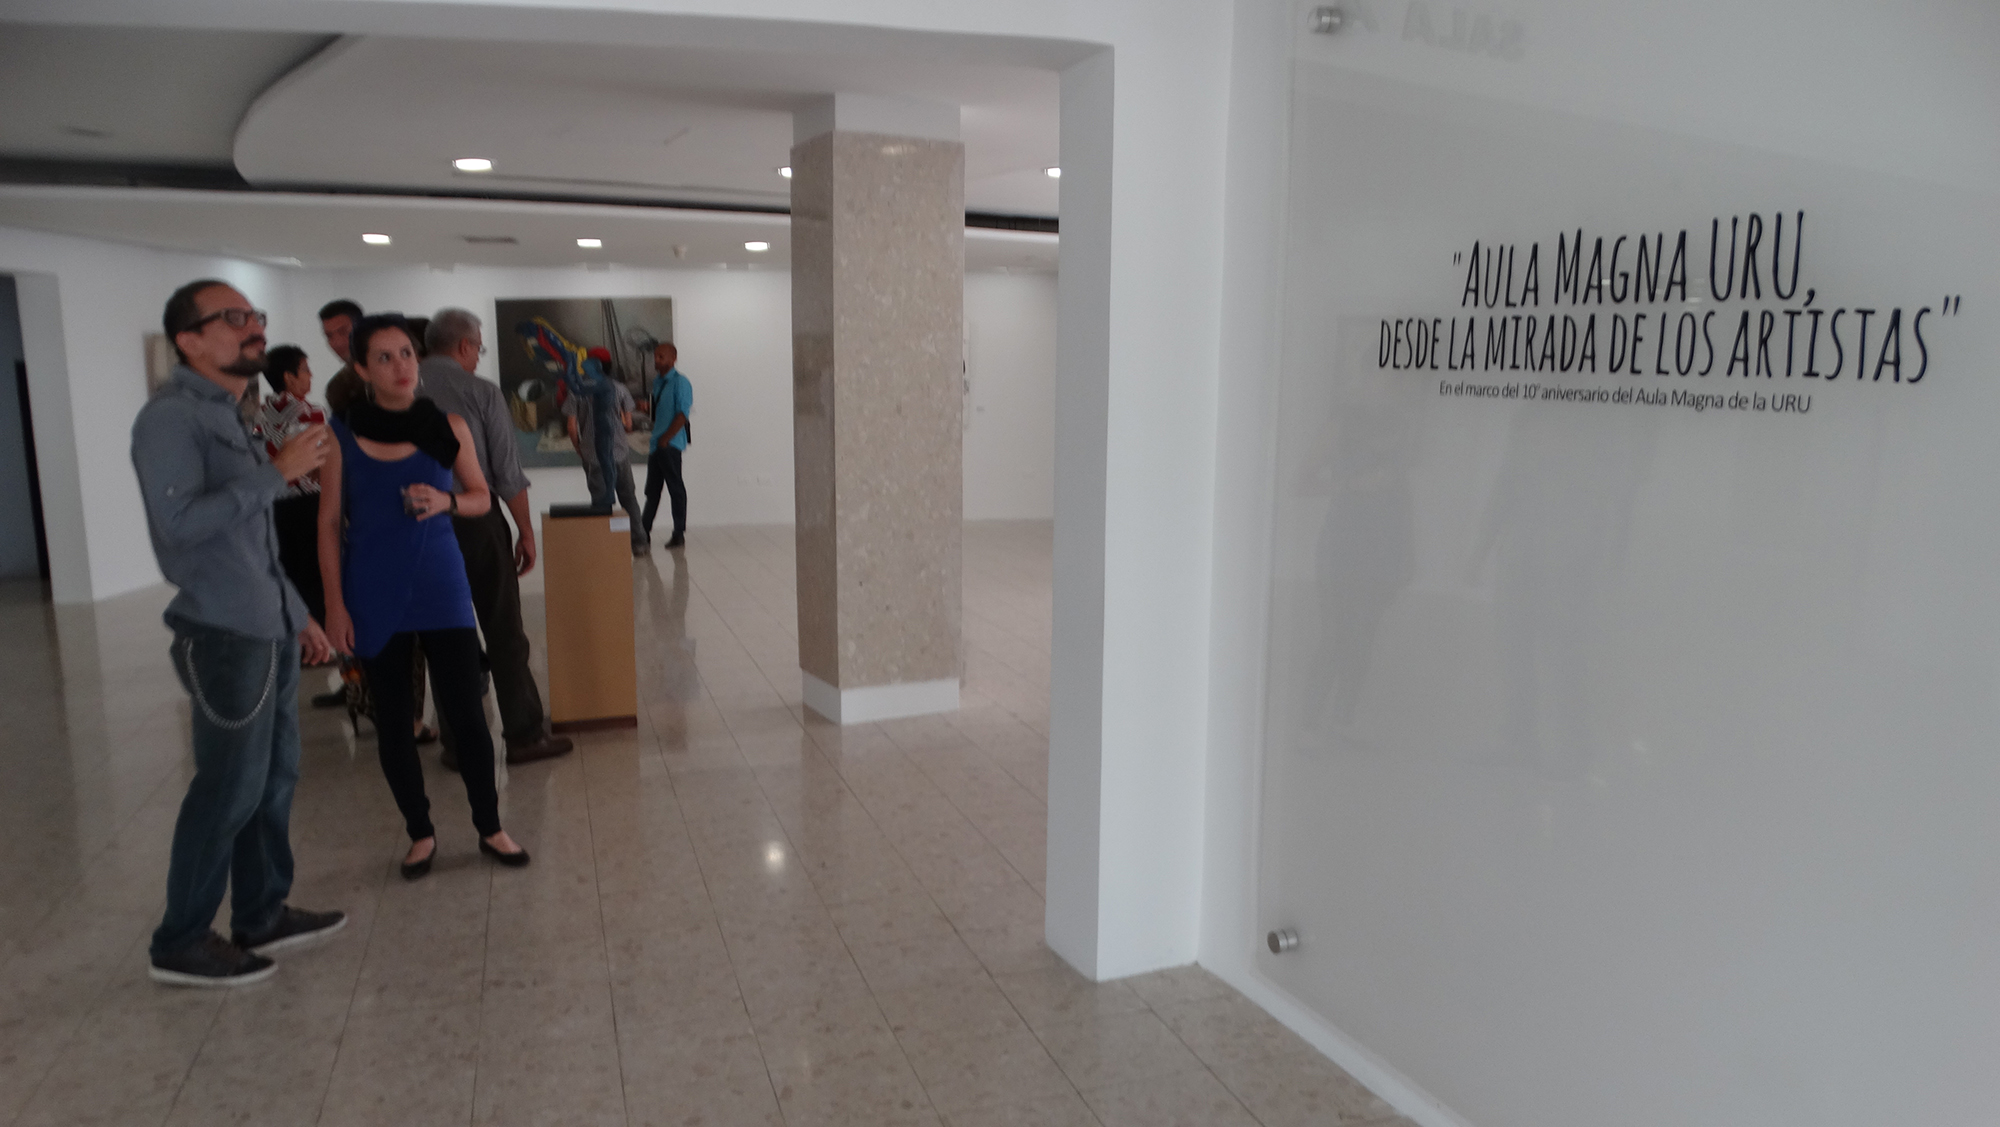 Noveles y consagrados convergen en la exposición  “Aula Magna URU, desde la Mirada de los Artistas”